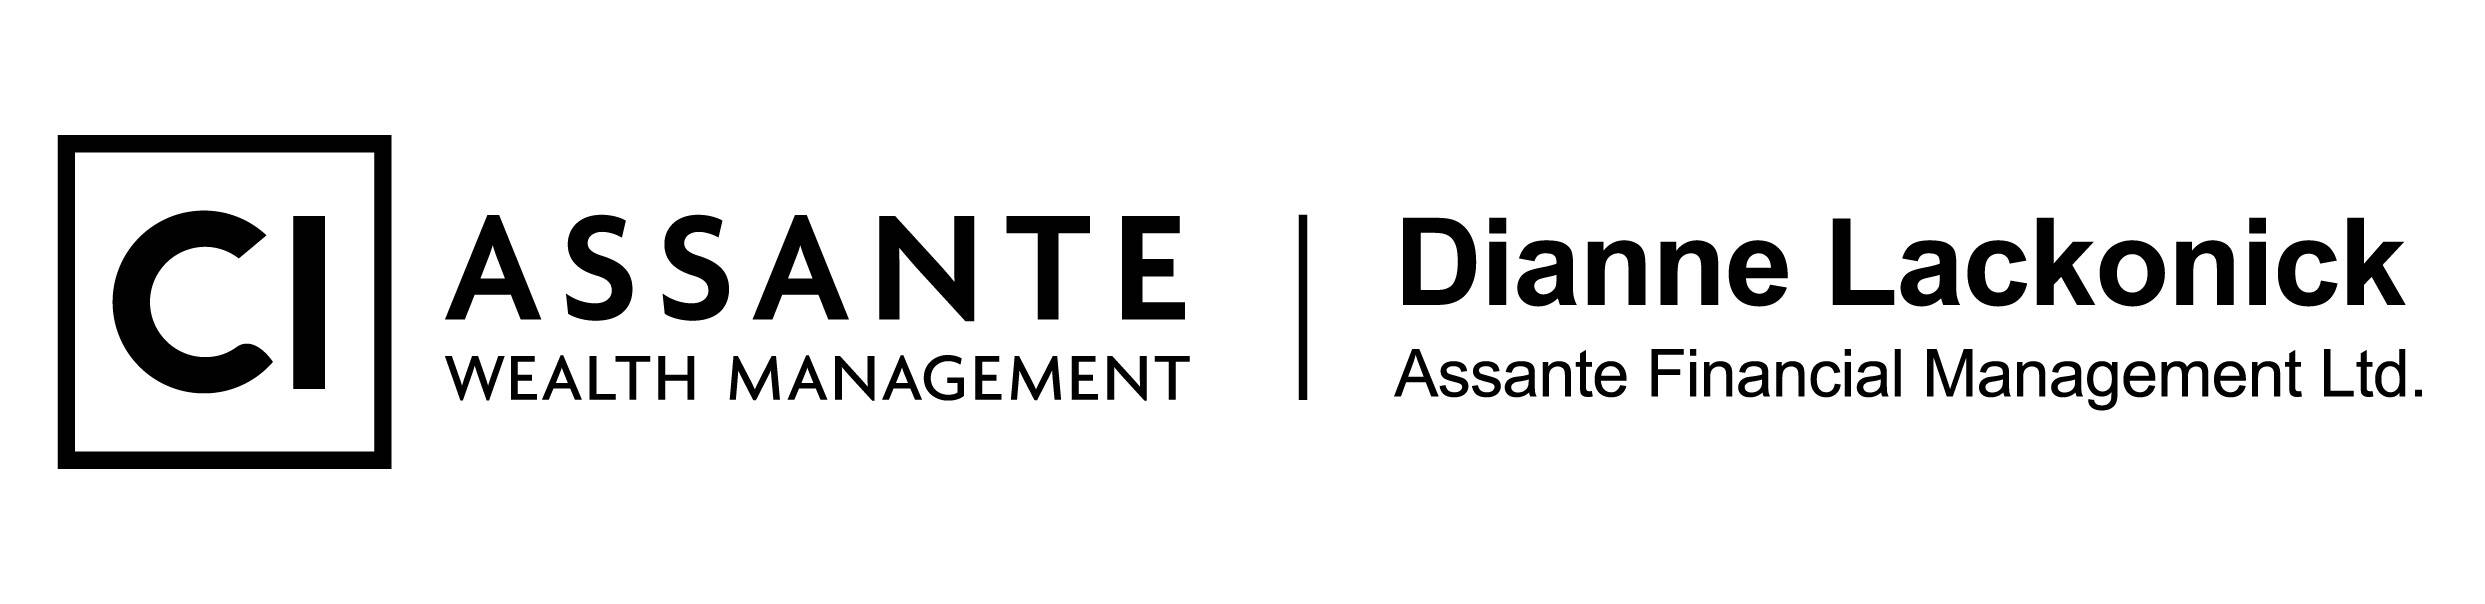 Assante Wealth Management- Dianne Lackonick